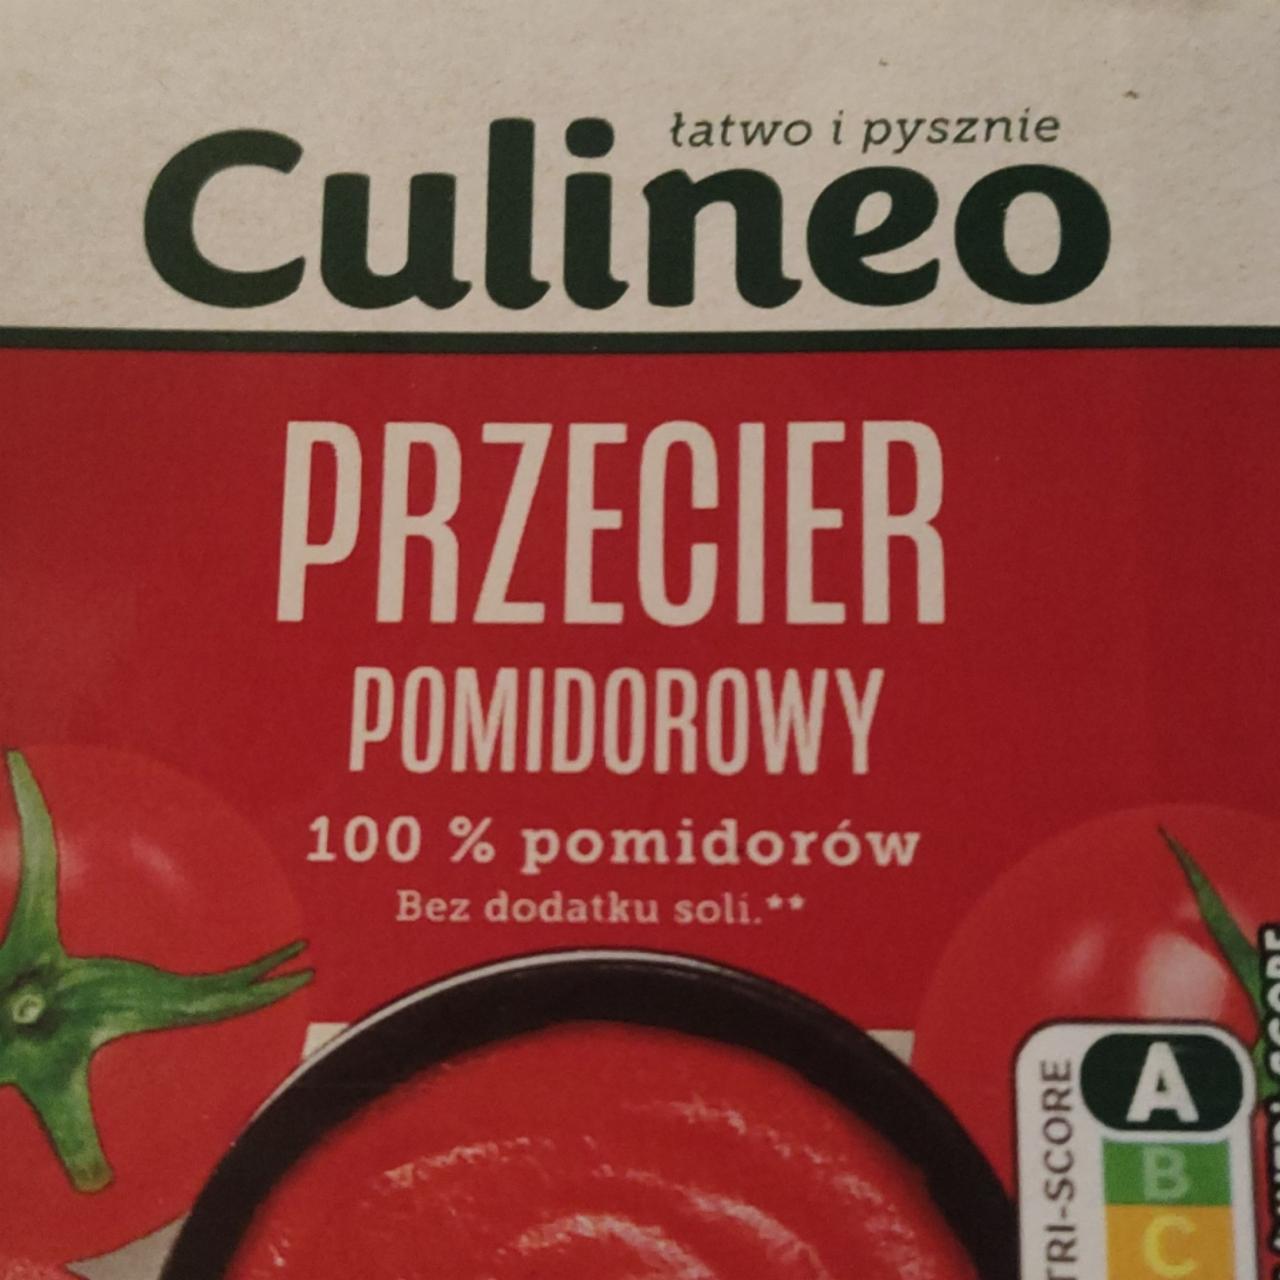 Fotografie - przecier pomidorowy Culineo